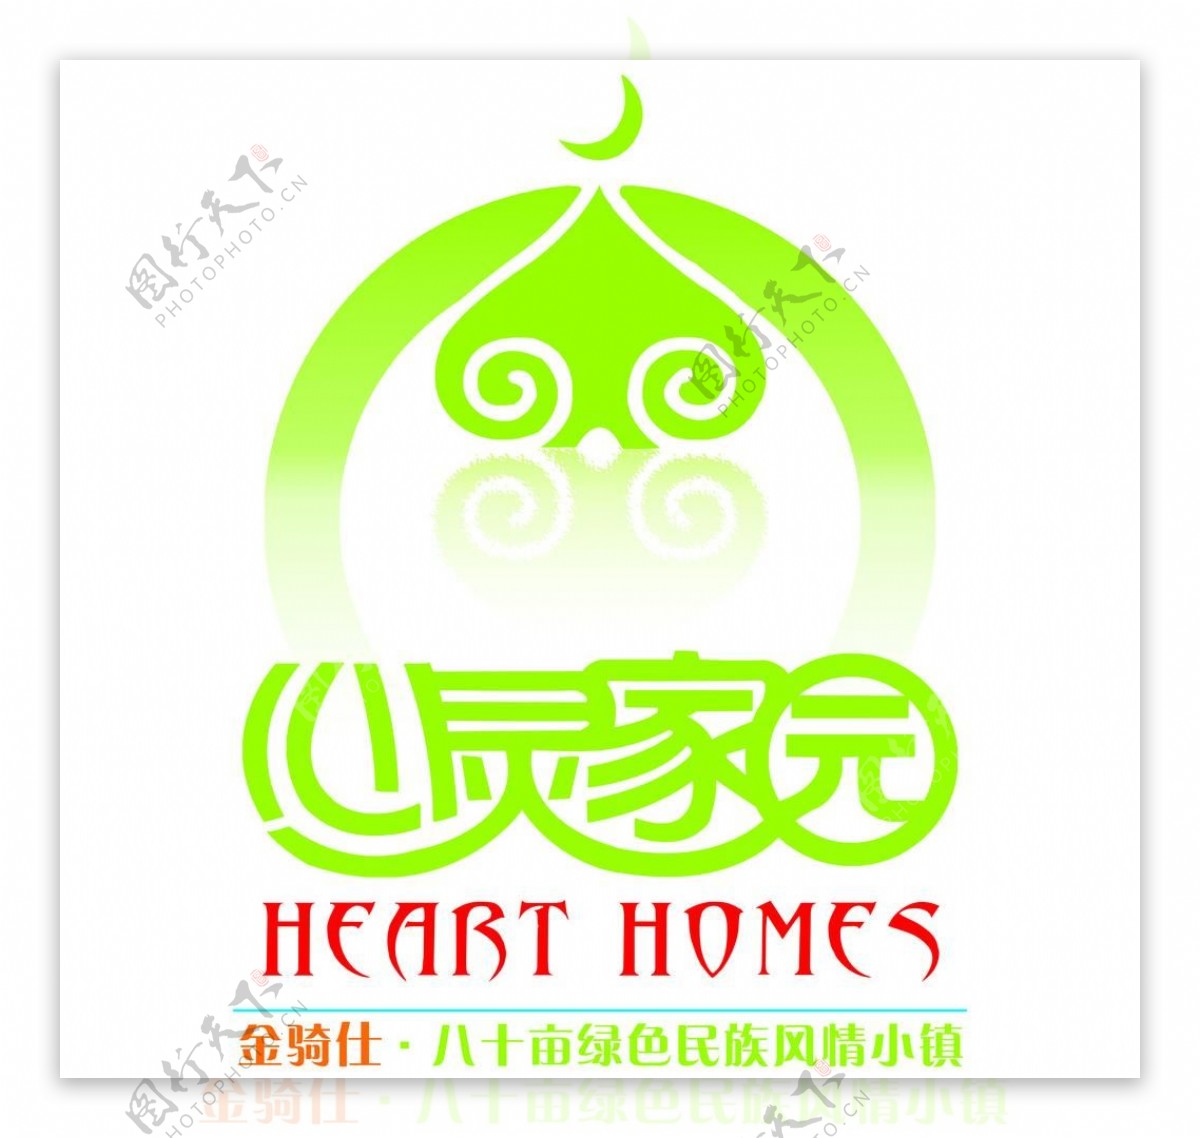 心灵家园logo图片